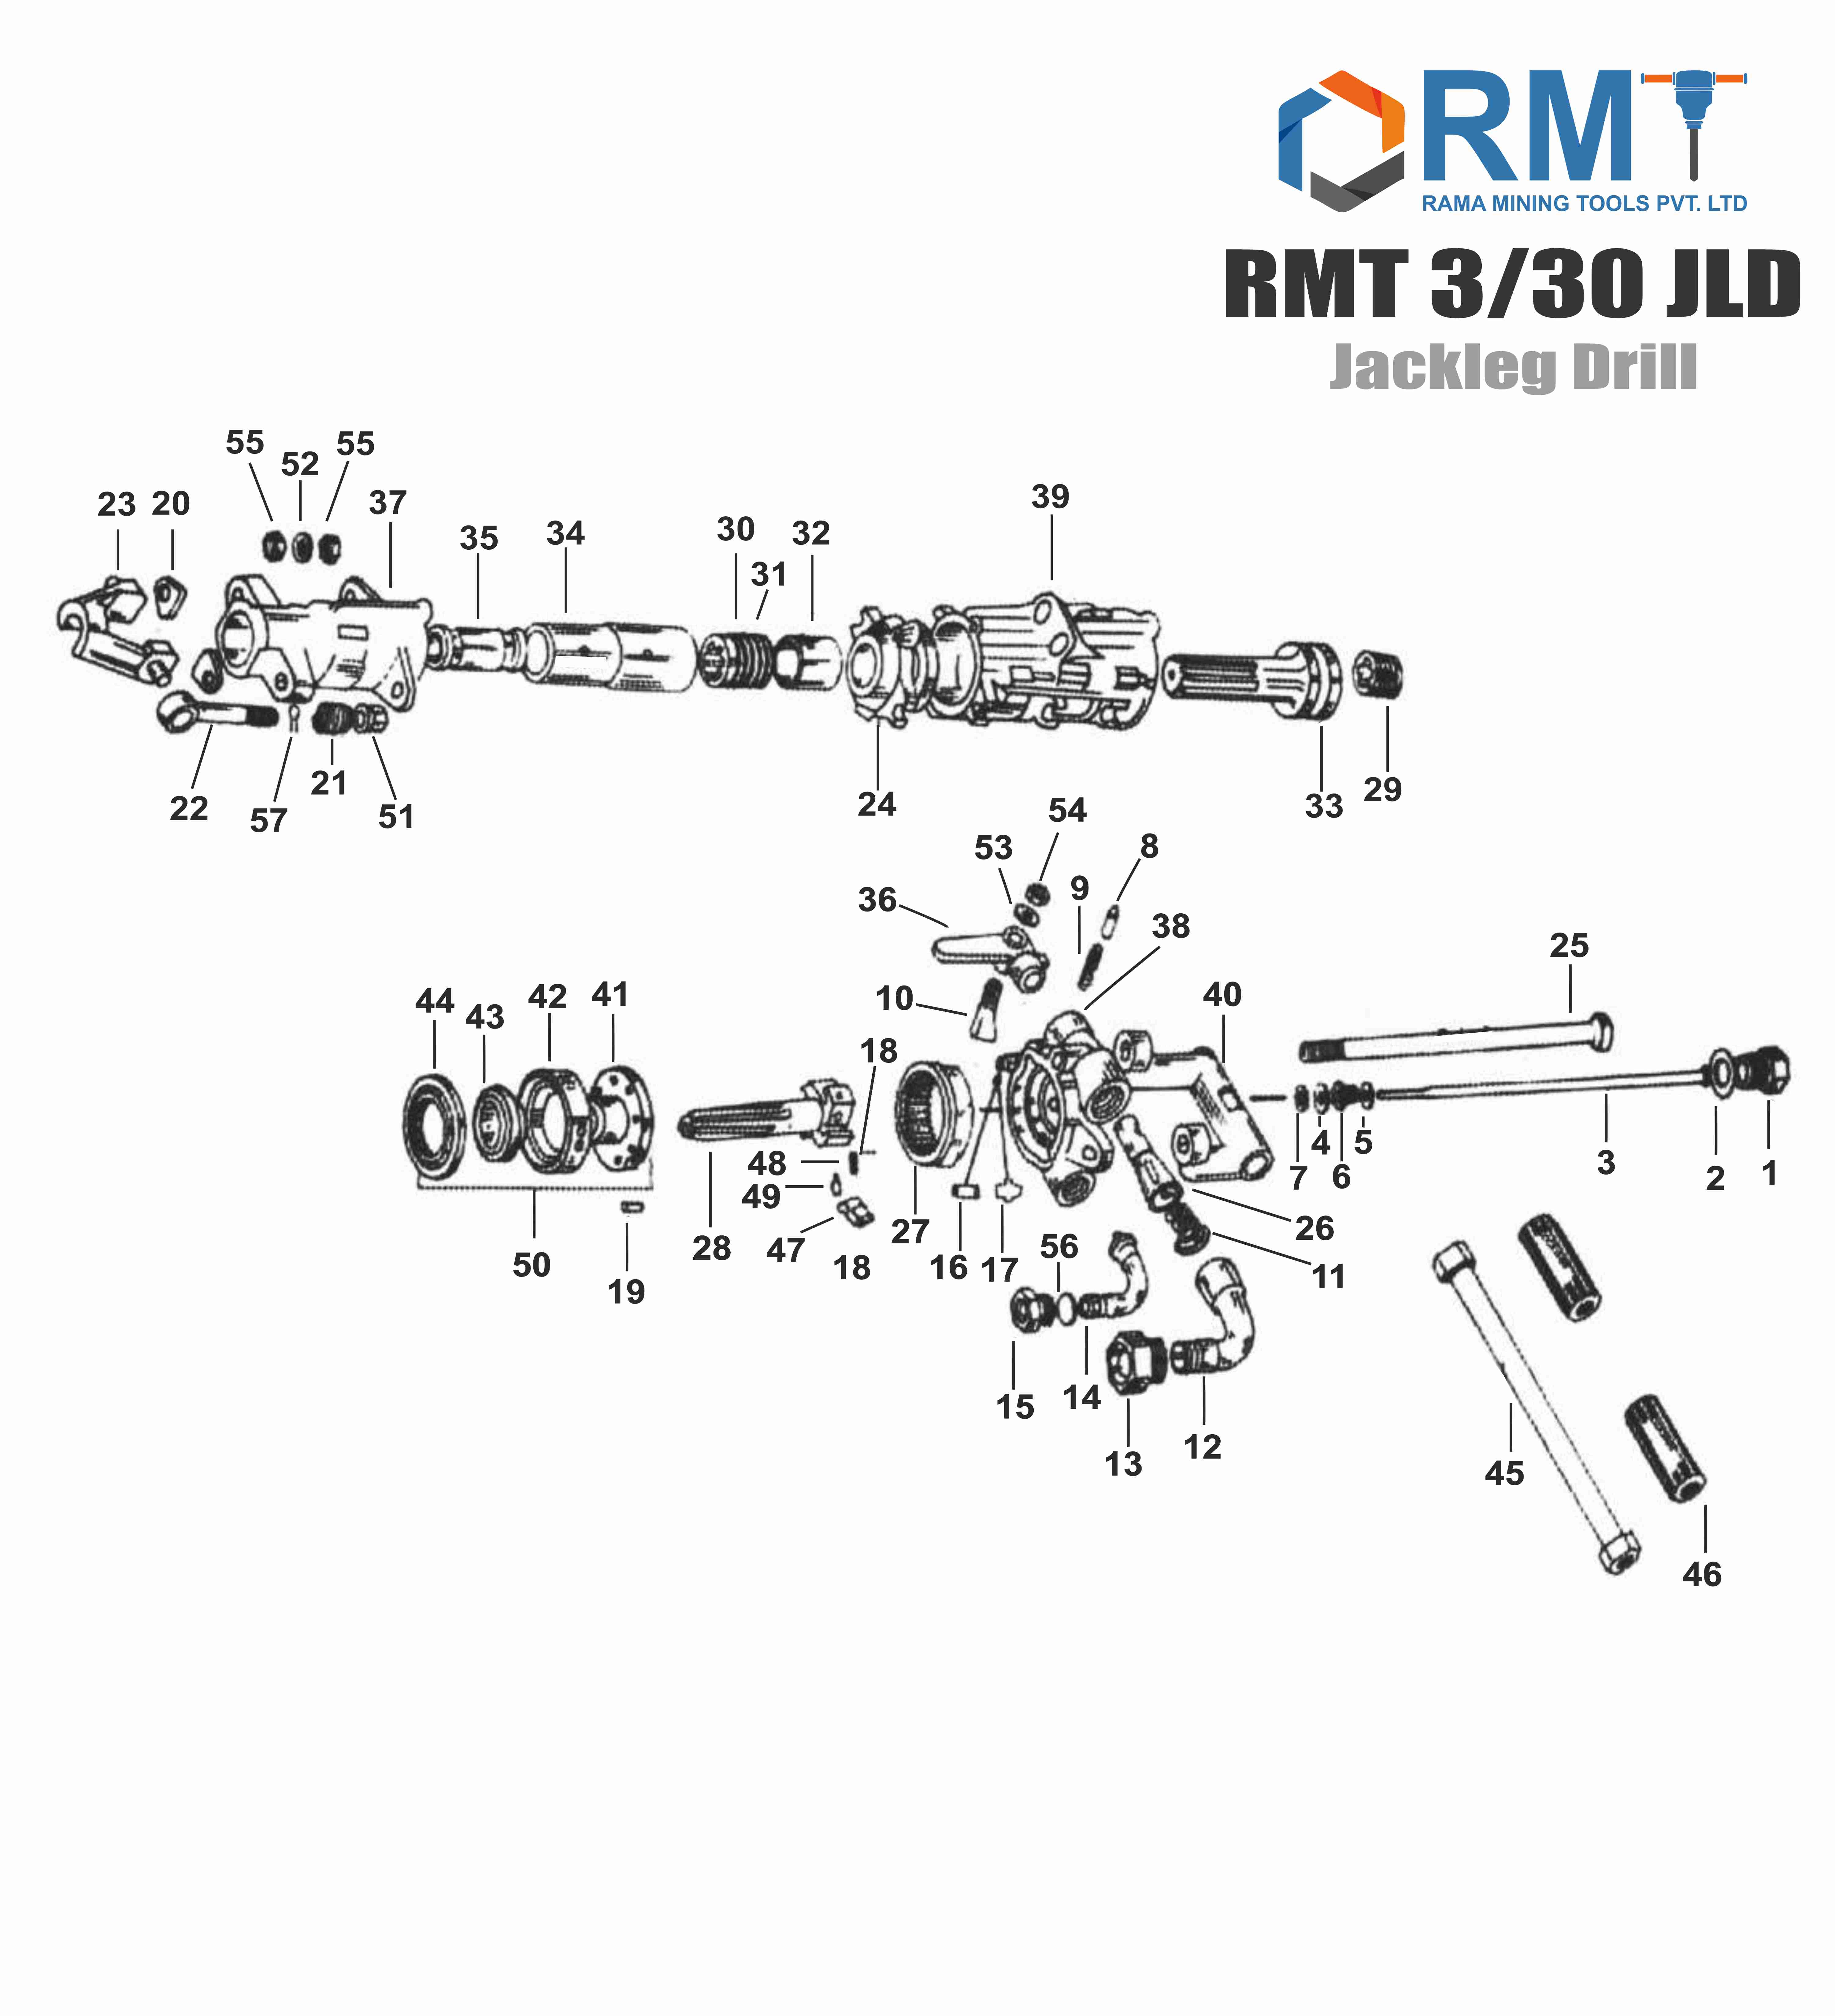 RMT 3/30 JLD - Jackleg Drill